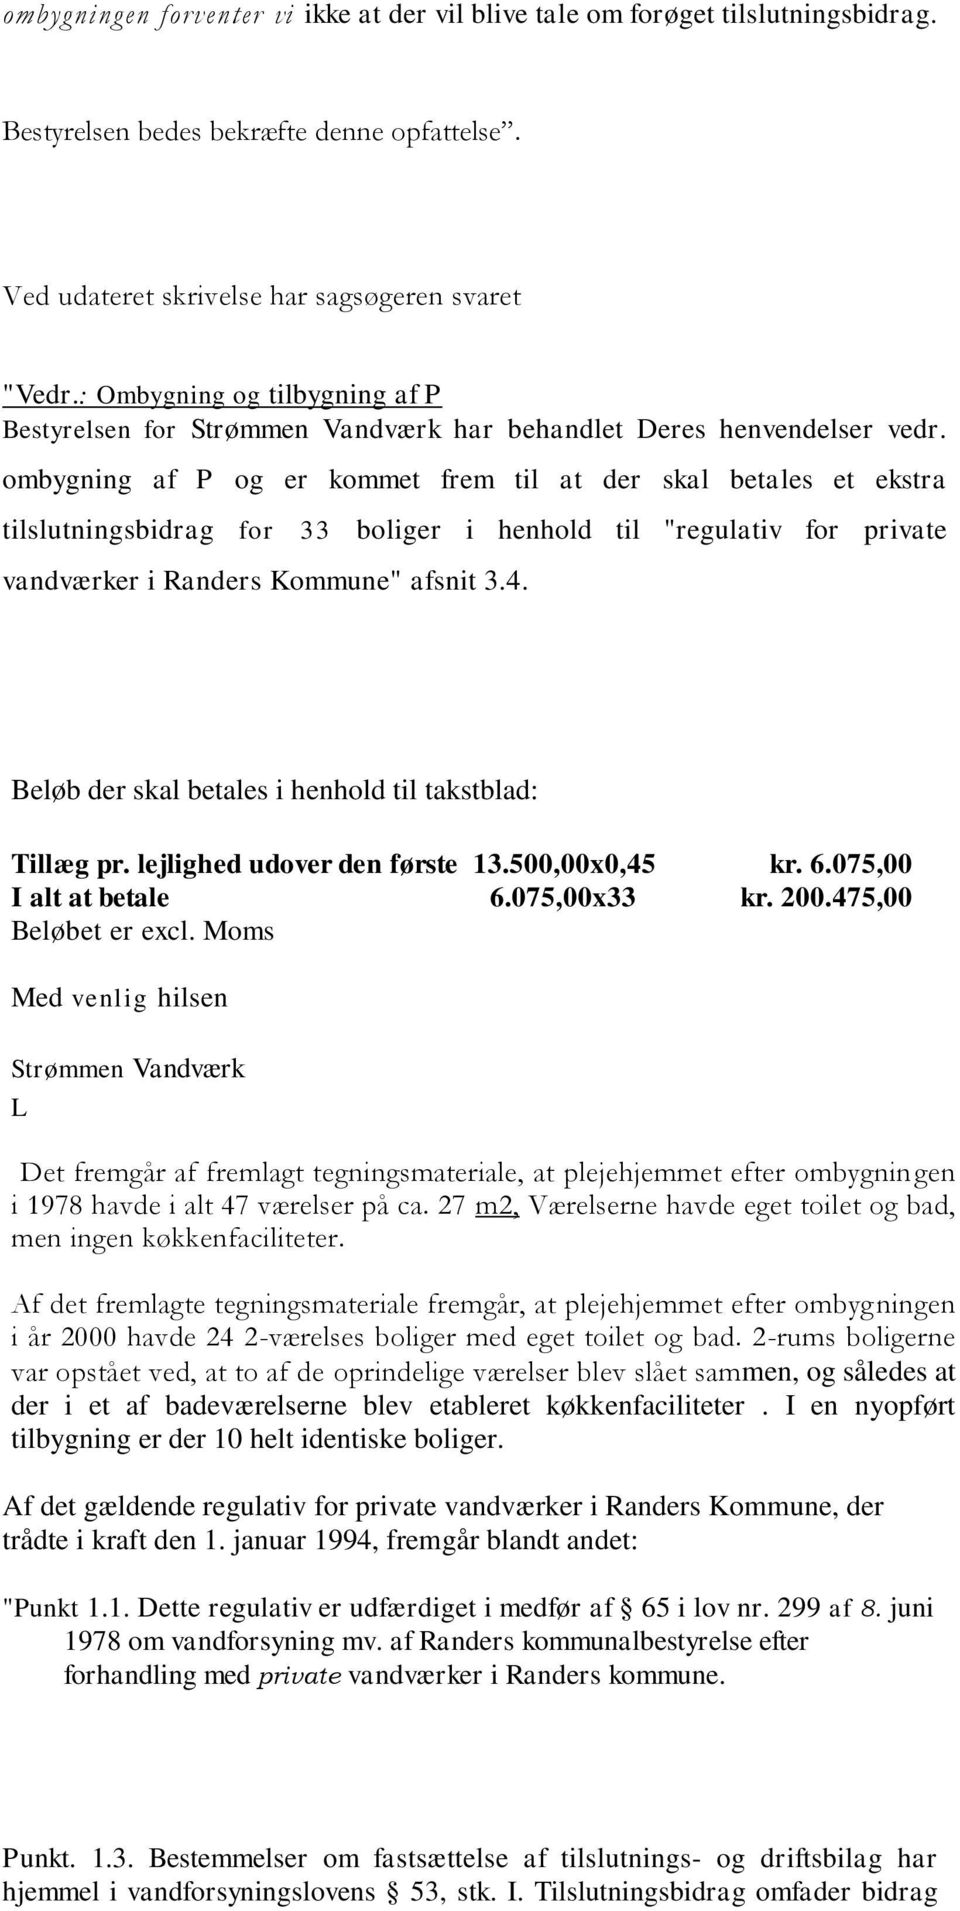 ombygning af P og er kommet frem til at der skal betales et ekstra tilslutningsbidrag for 33 boliger i henhold til "regulativ for private vandværker i Randers Kommune" afsnit 3.4.